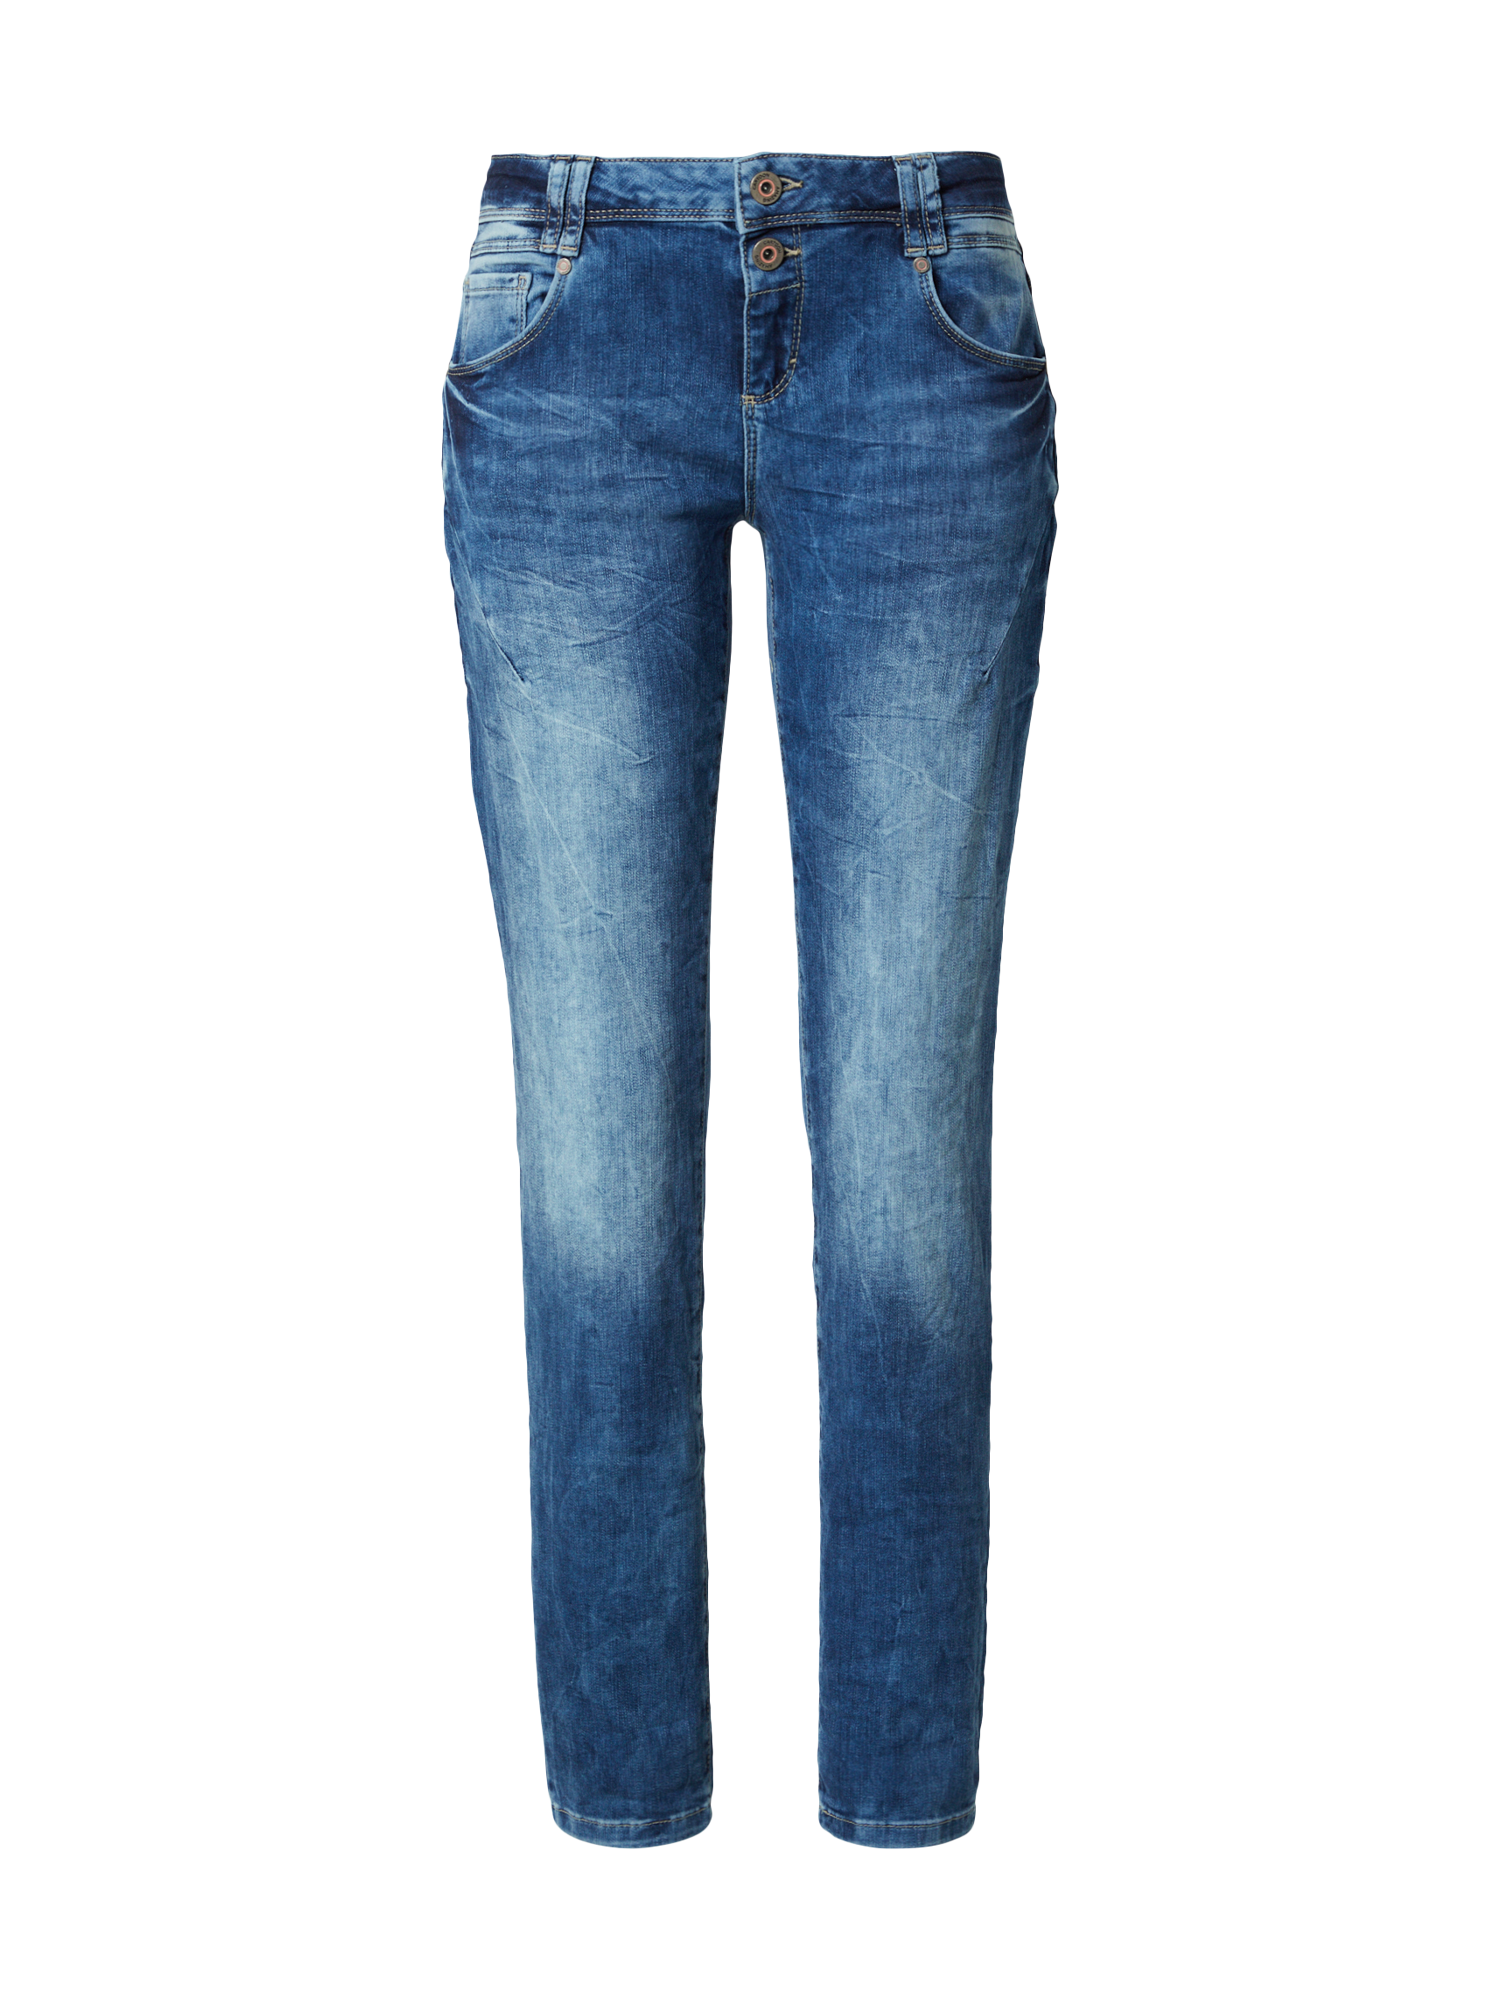 Donna Abbigliamento Cartoon Jeans in Blu Scuro 